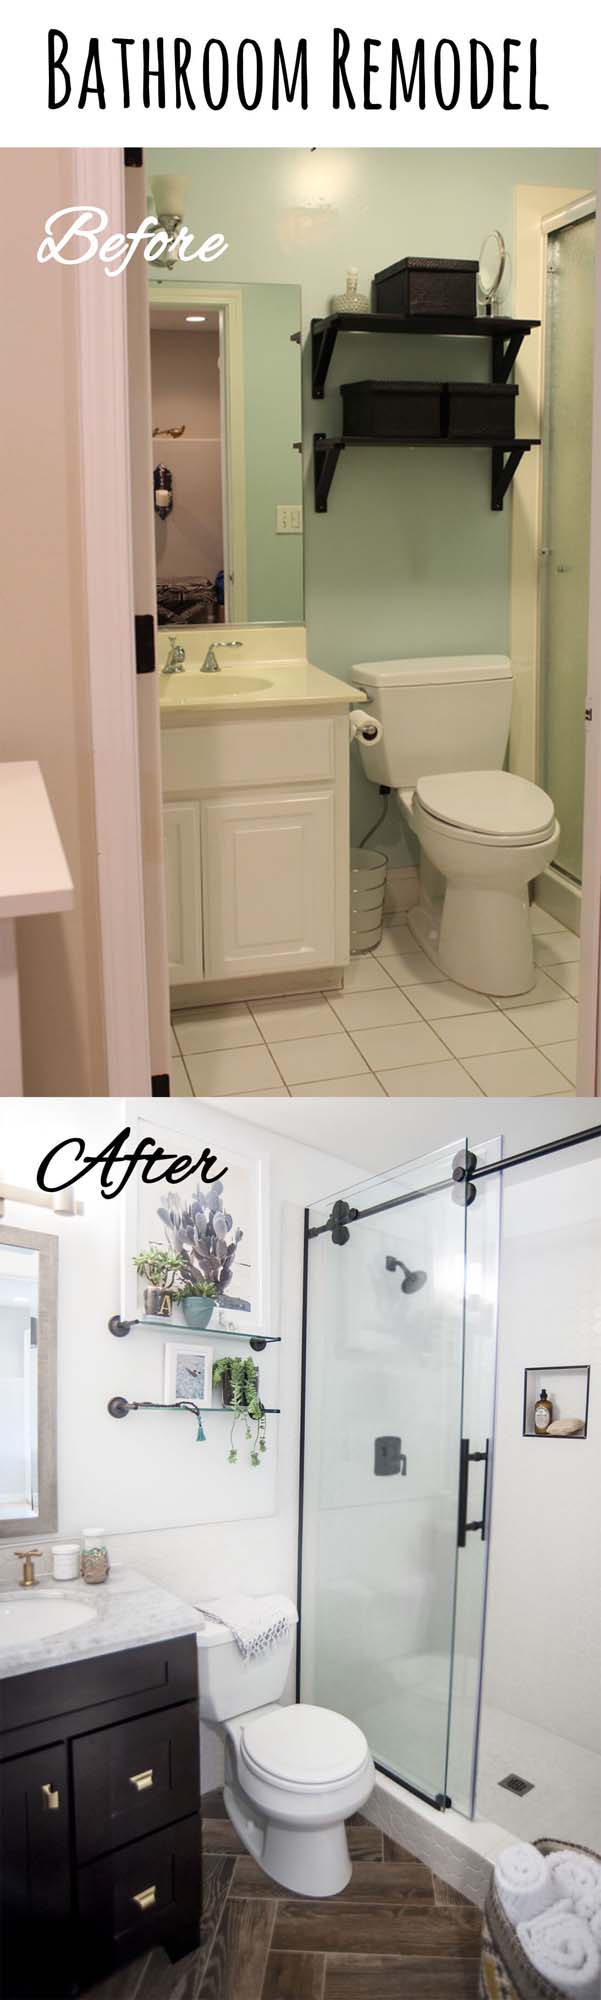 Open It Up with Updated Shower Doors #bathroom #makeover #decorhomeideas